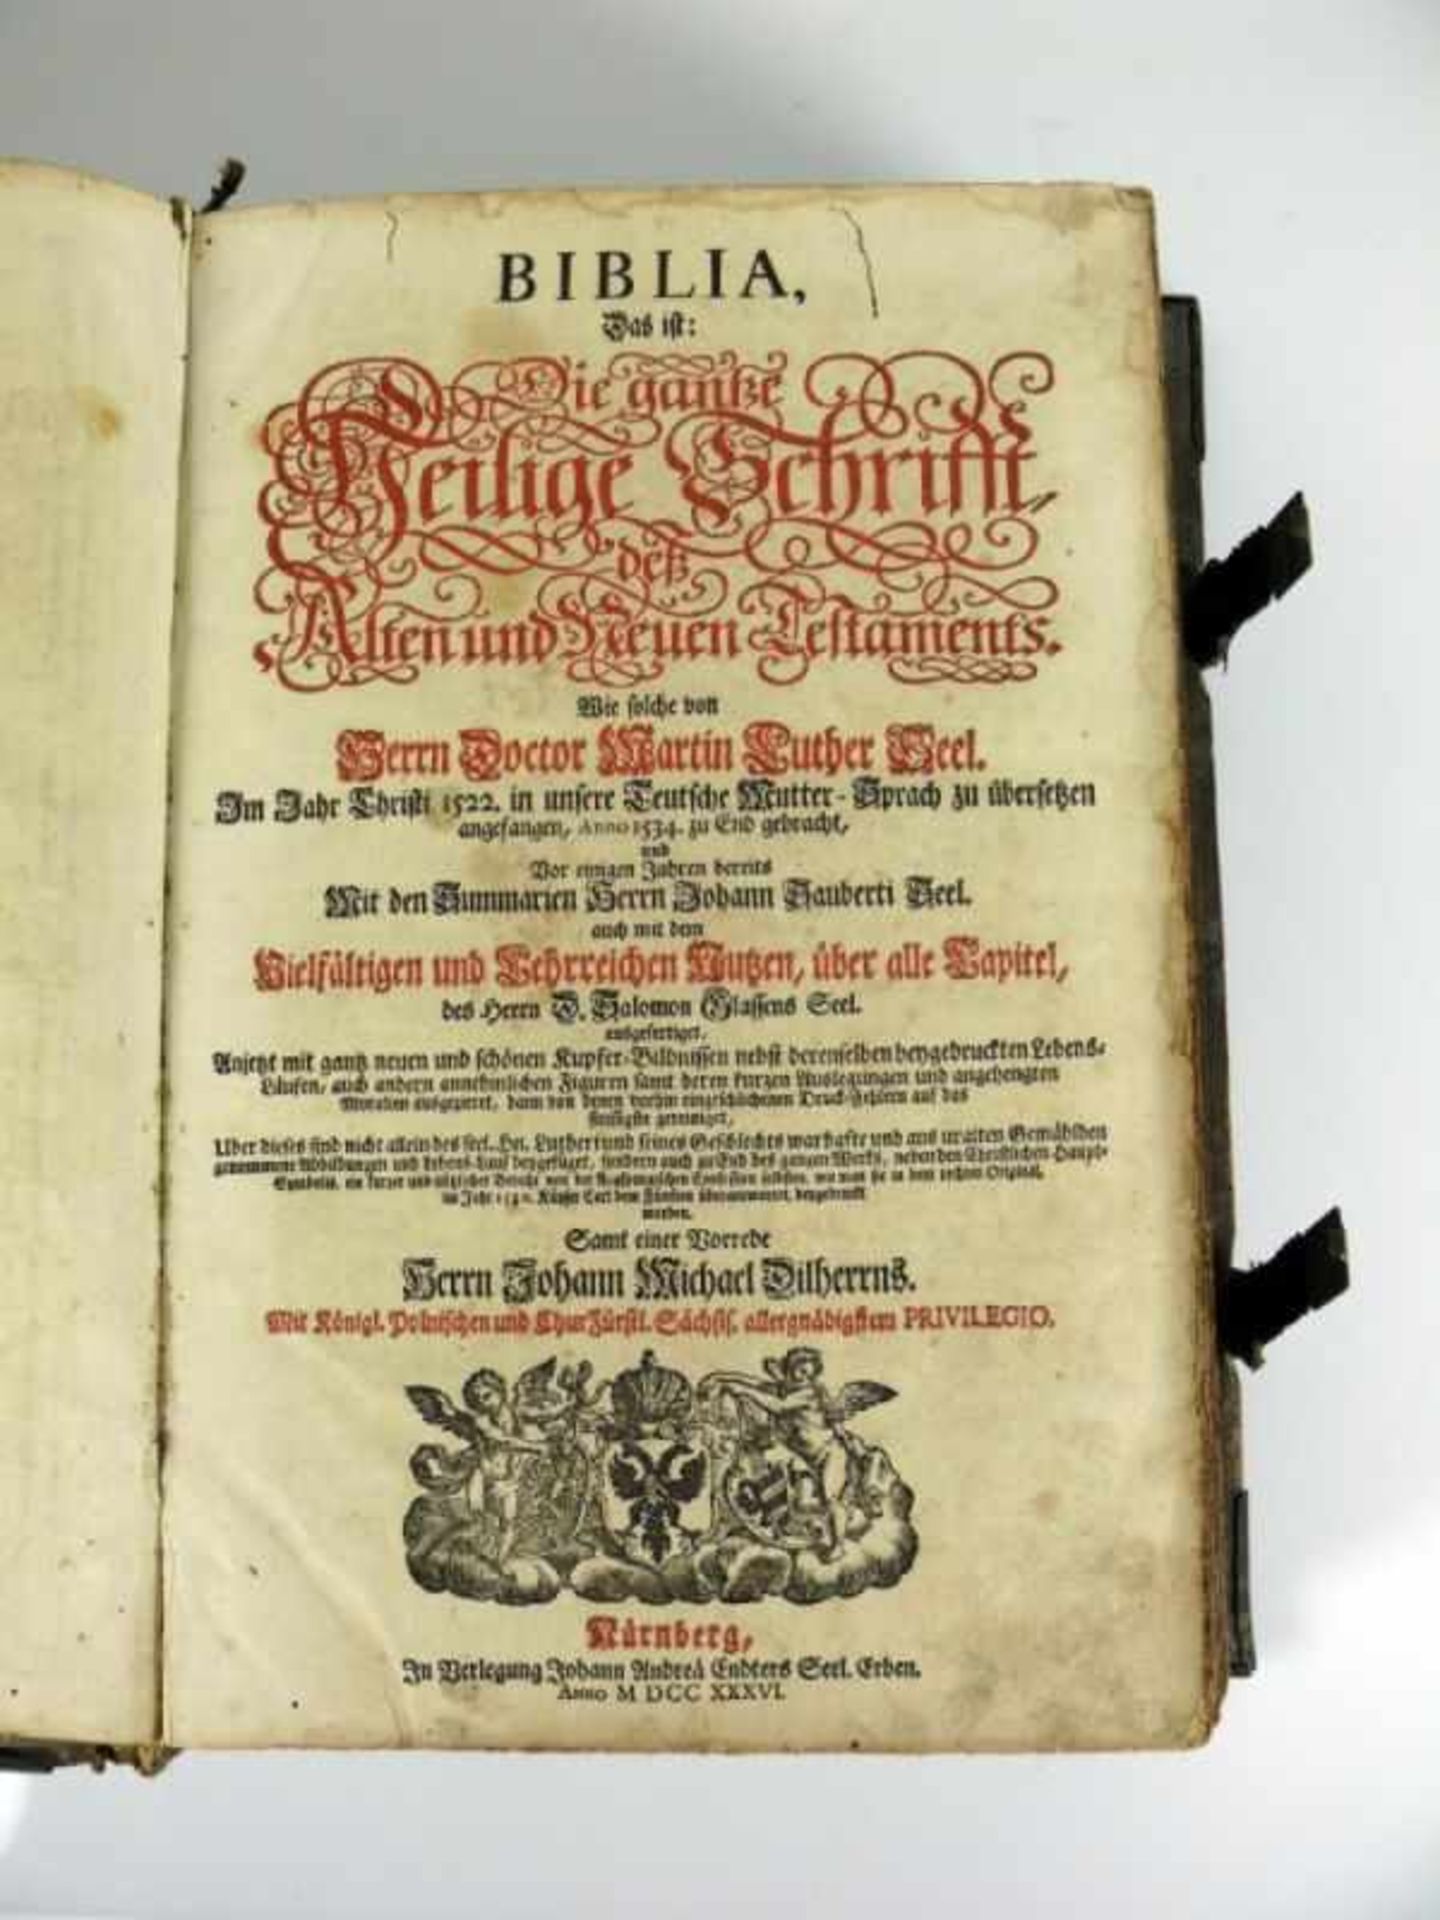 BIBLIA (1736) Die gantze Heilige Schrift des Alten und neuen Testaments wie solche von Herrn